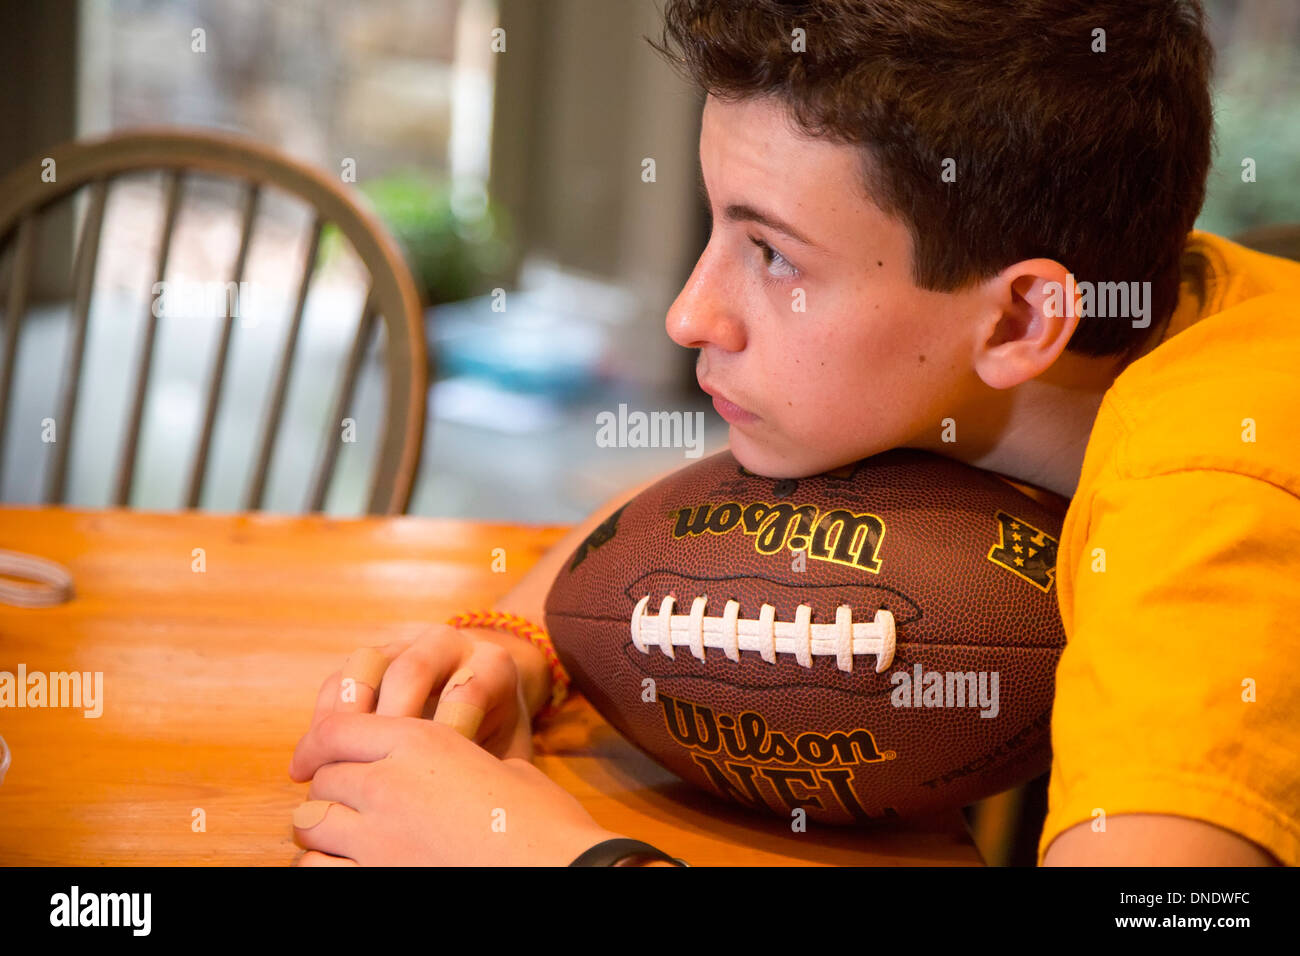 Washington, DC - High-School-Neuling Joey West, 15, mit seinem Fußball. Stockfoto